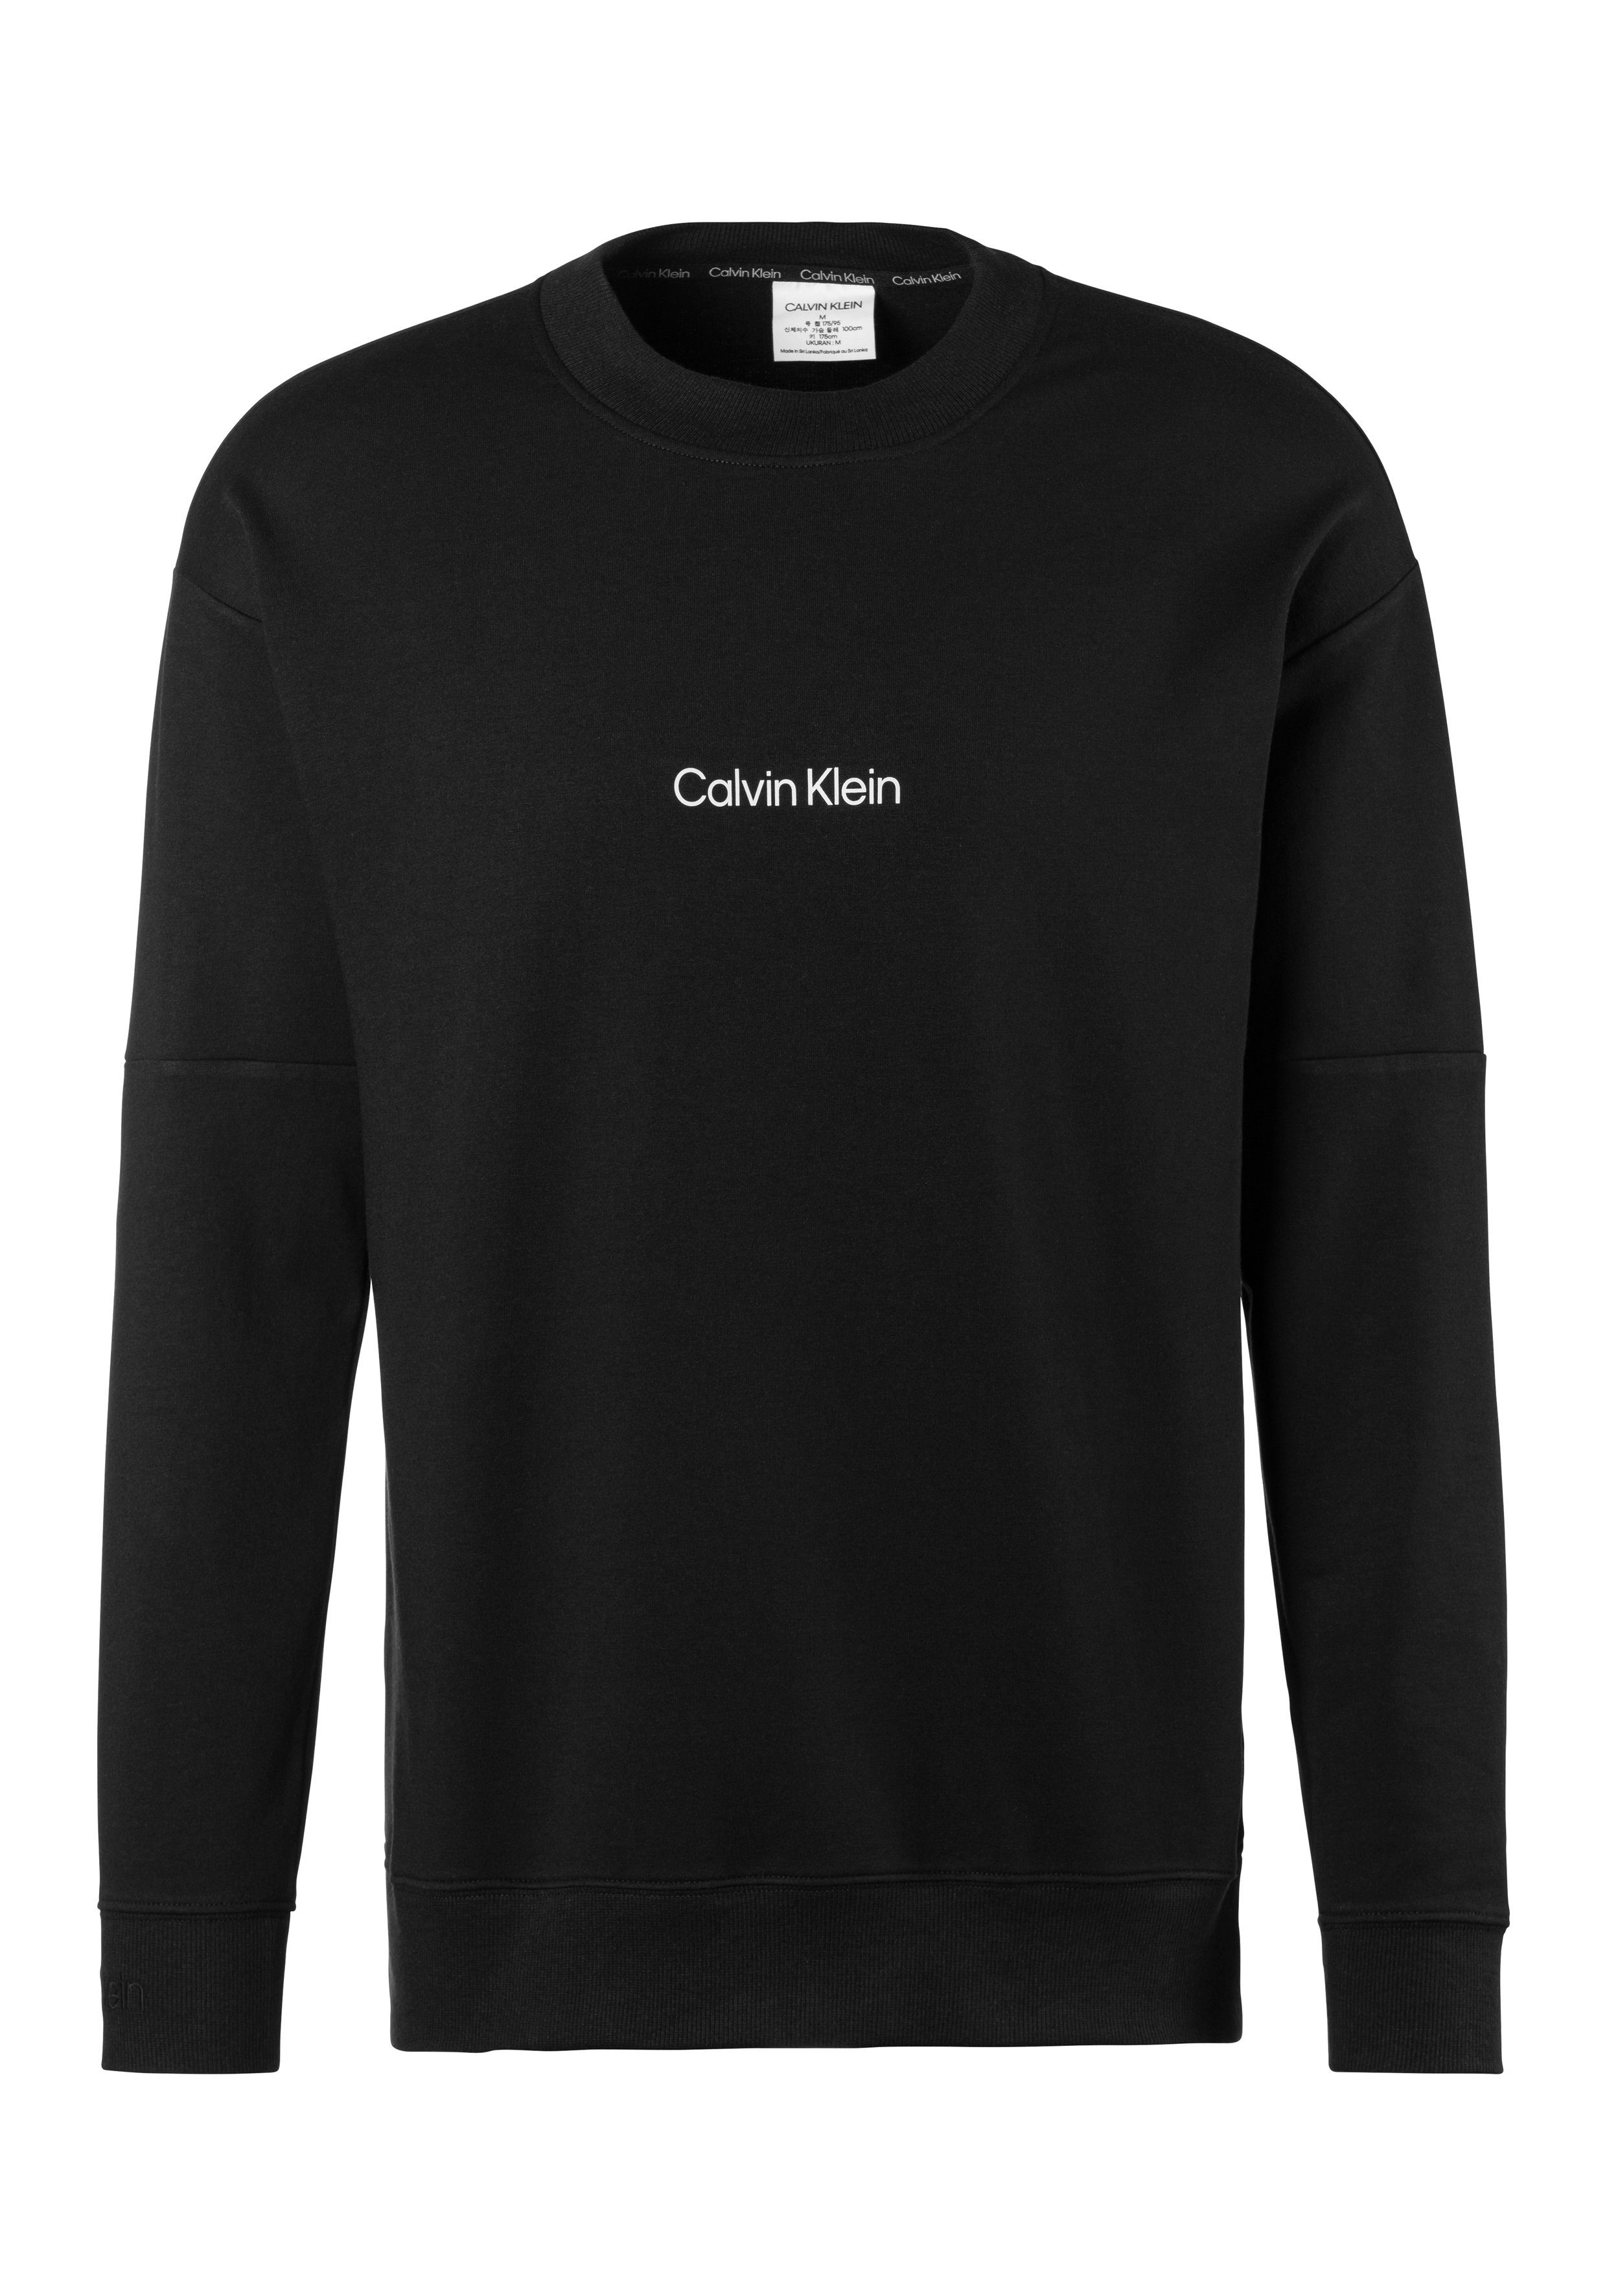 Calvin Klein Underwear Sweatshirt mit Logodruck vorn schwarz